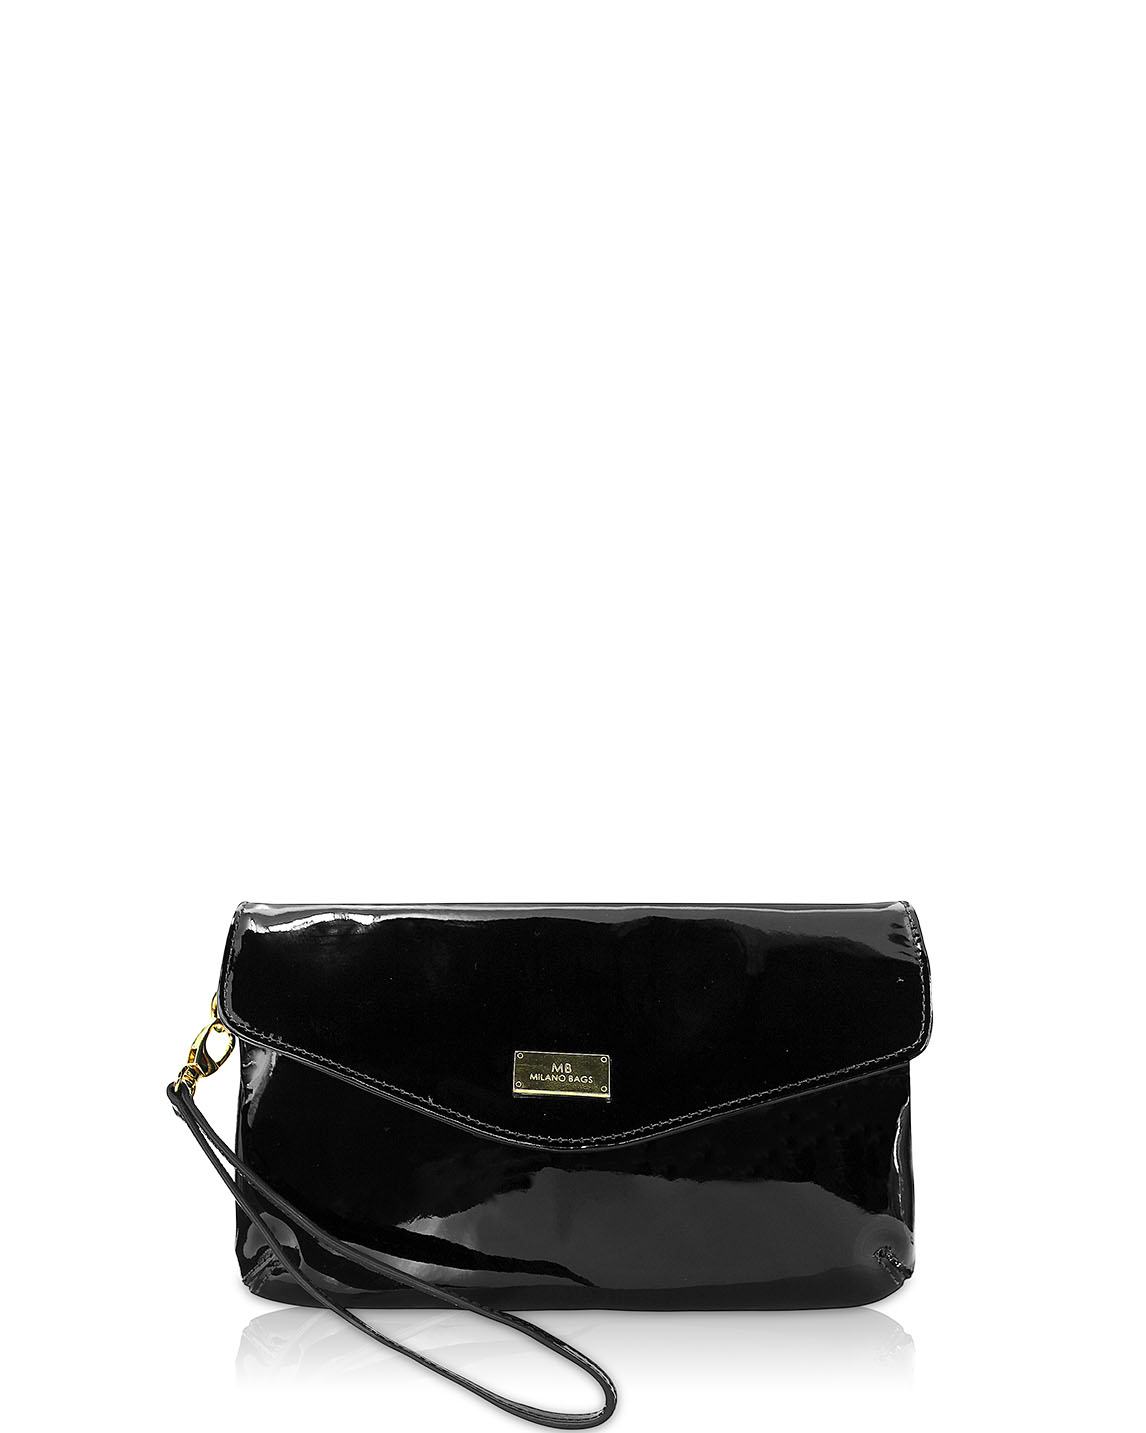 Carteras Clutch & Evening Bag DS-2455 Color Negro